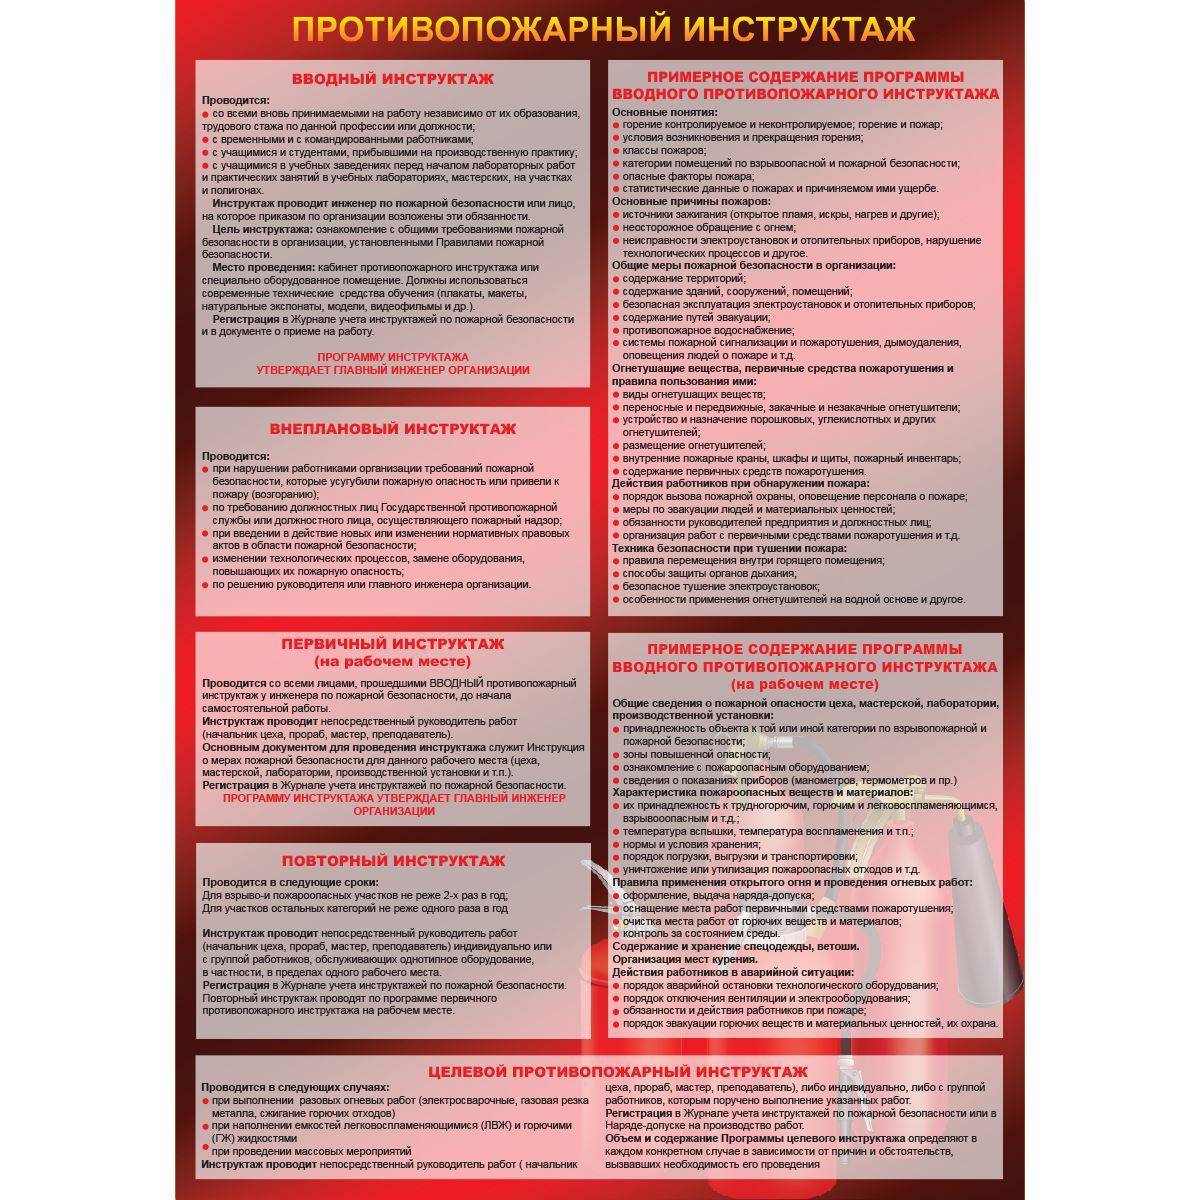 Противопожарный инструктаж. виды противопожарного инструктажа :: businessman.ru